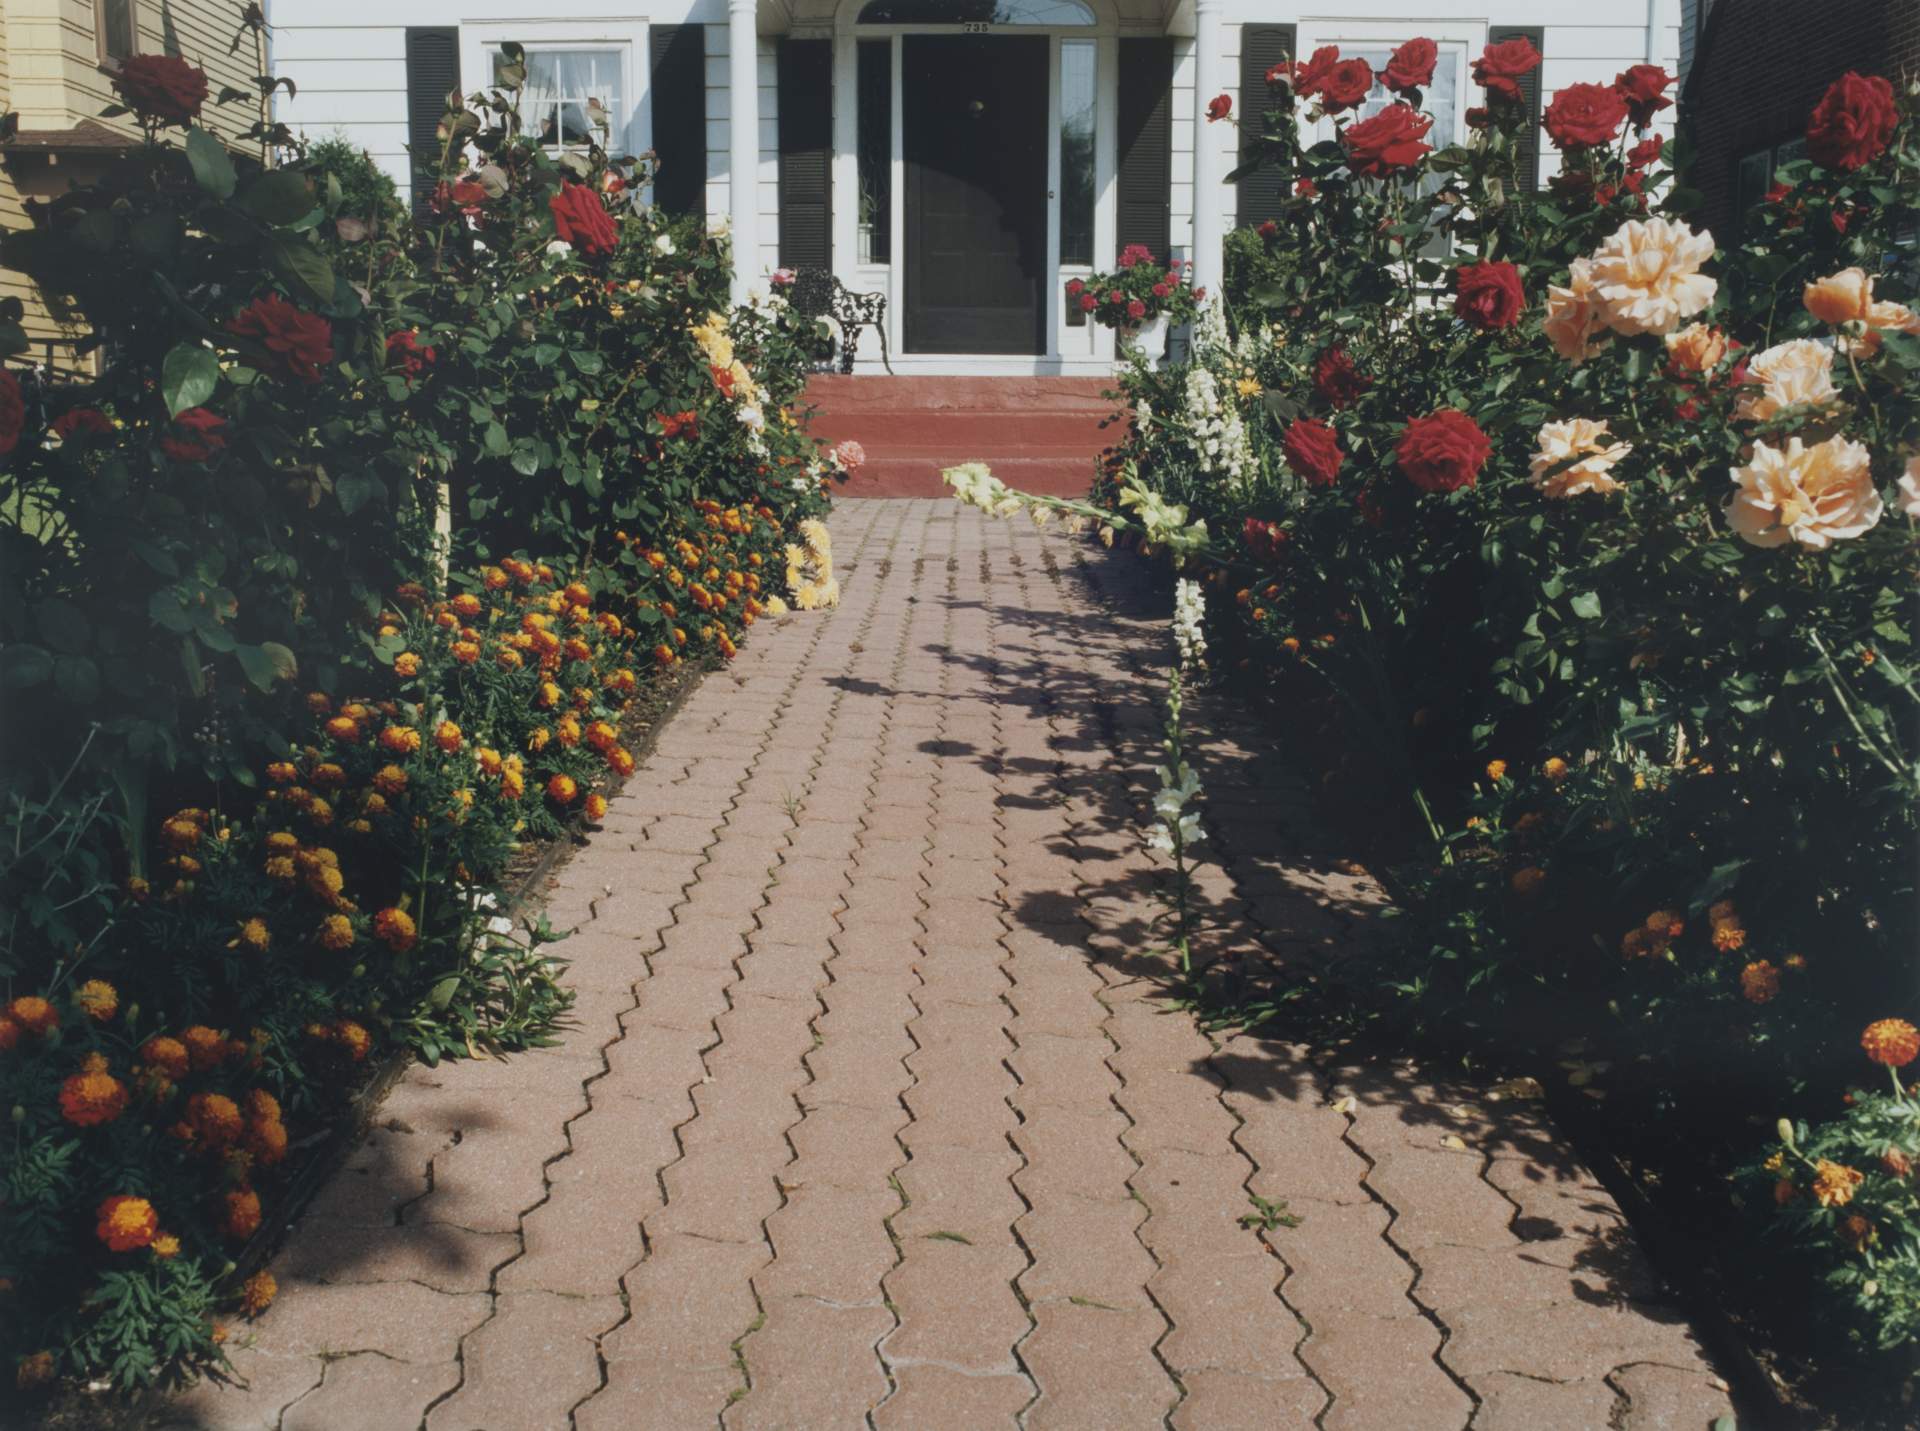 Pathway with roses, Starin Ave, Buffalo NY